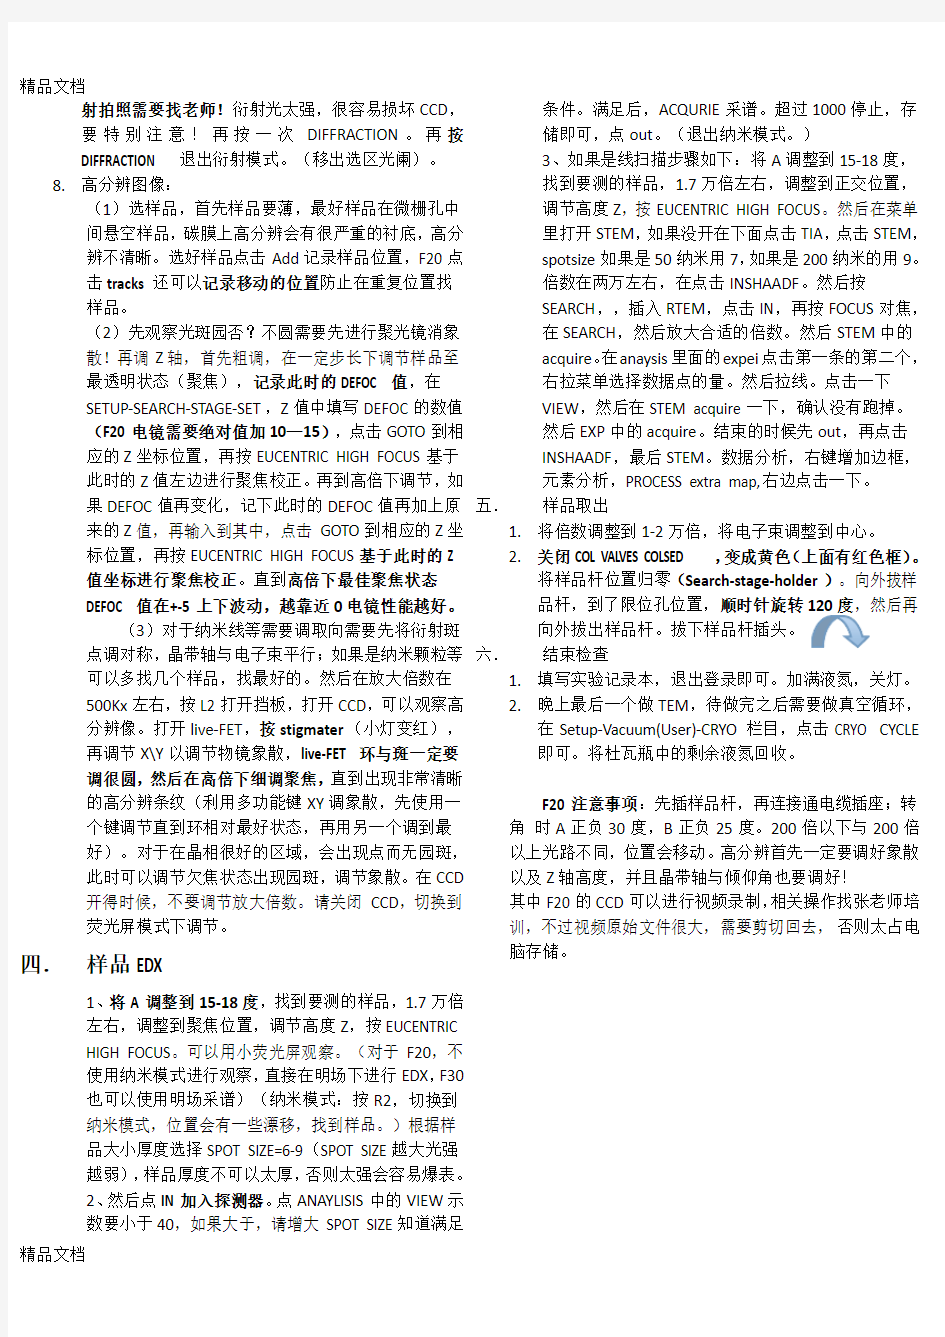 最新北京大学透射电镜F20与F30-操作流程详细步骤整理--邓玉豪-1220